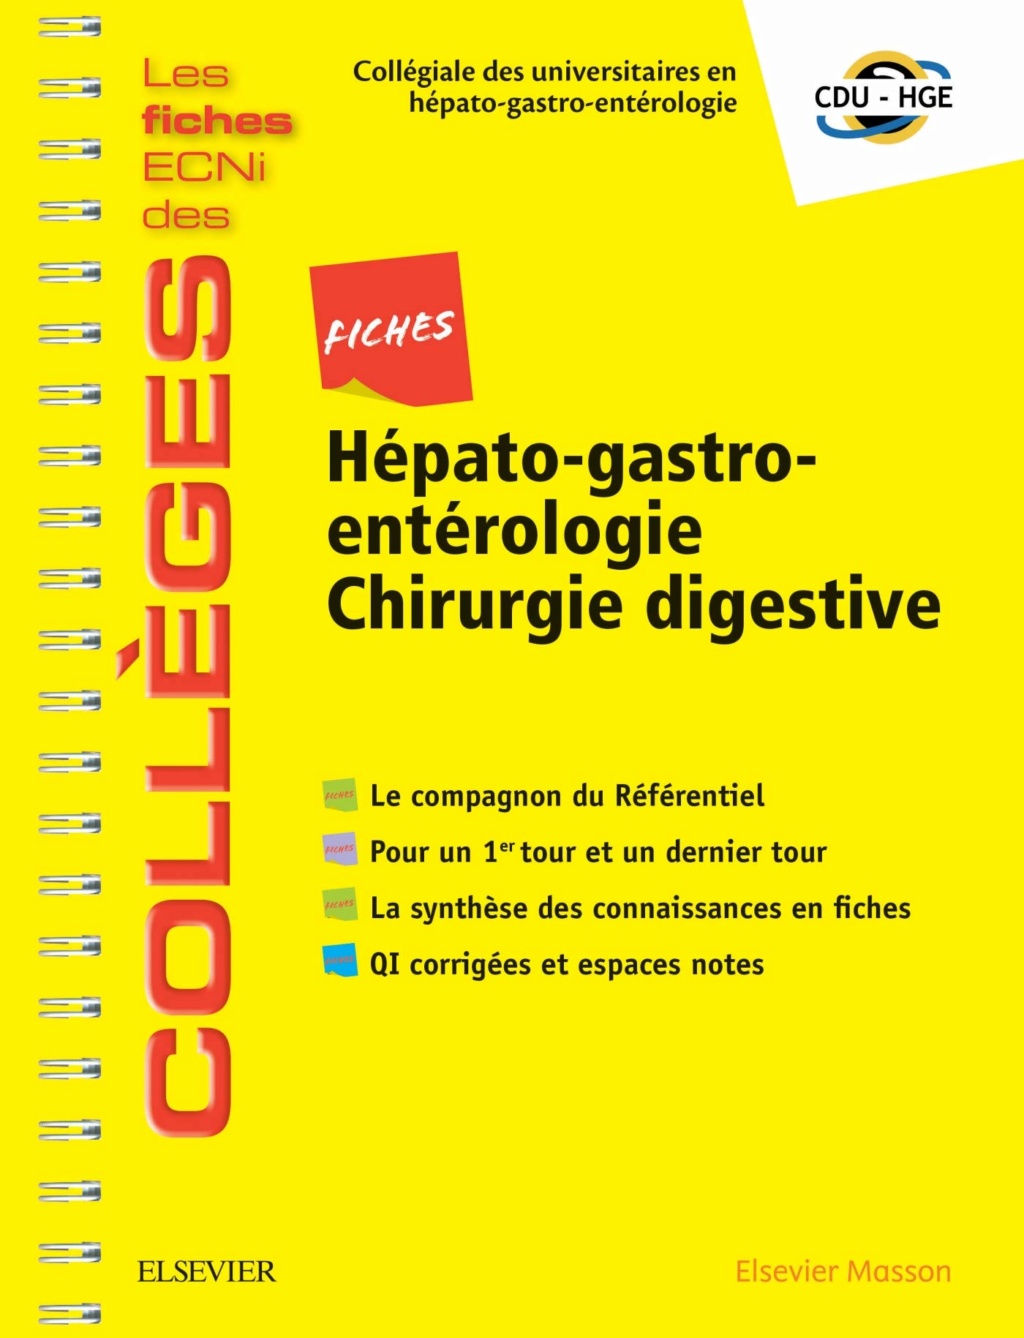 Livres Médicales - Fiches Hépato-gastro-entérologie Chirurgie digestive: Les fiches ECNi et QI des Collèges 2019 Fiches11